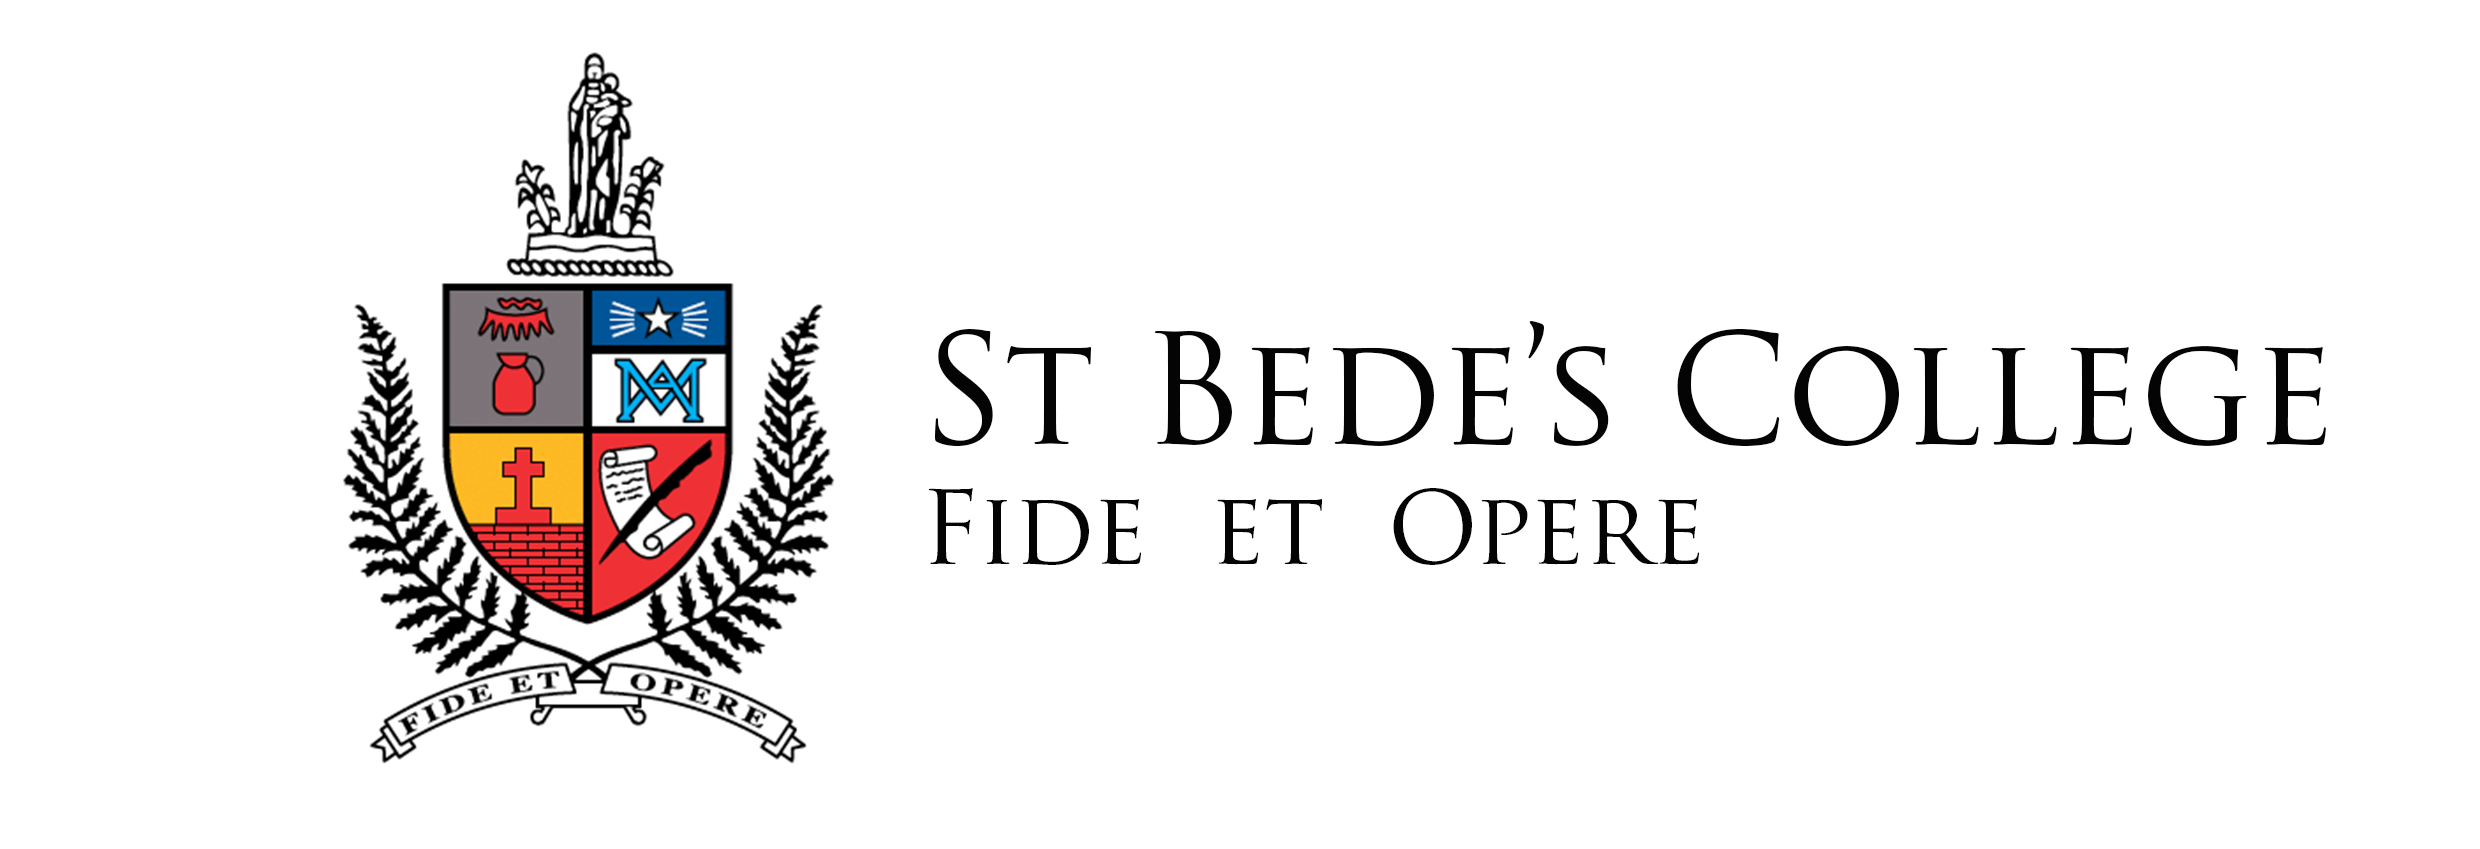 St Bede's School